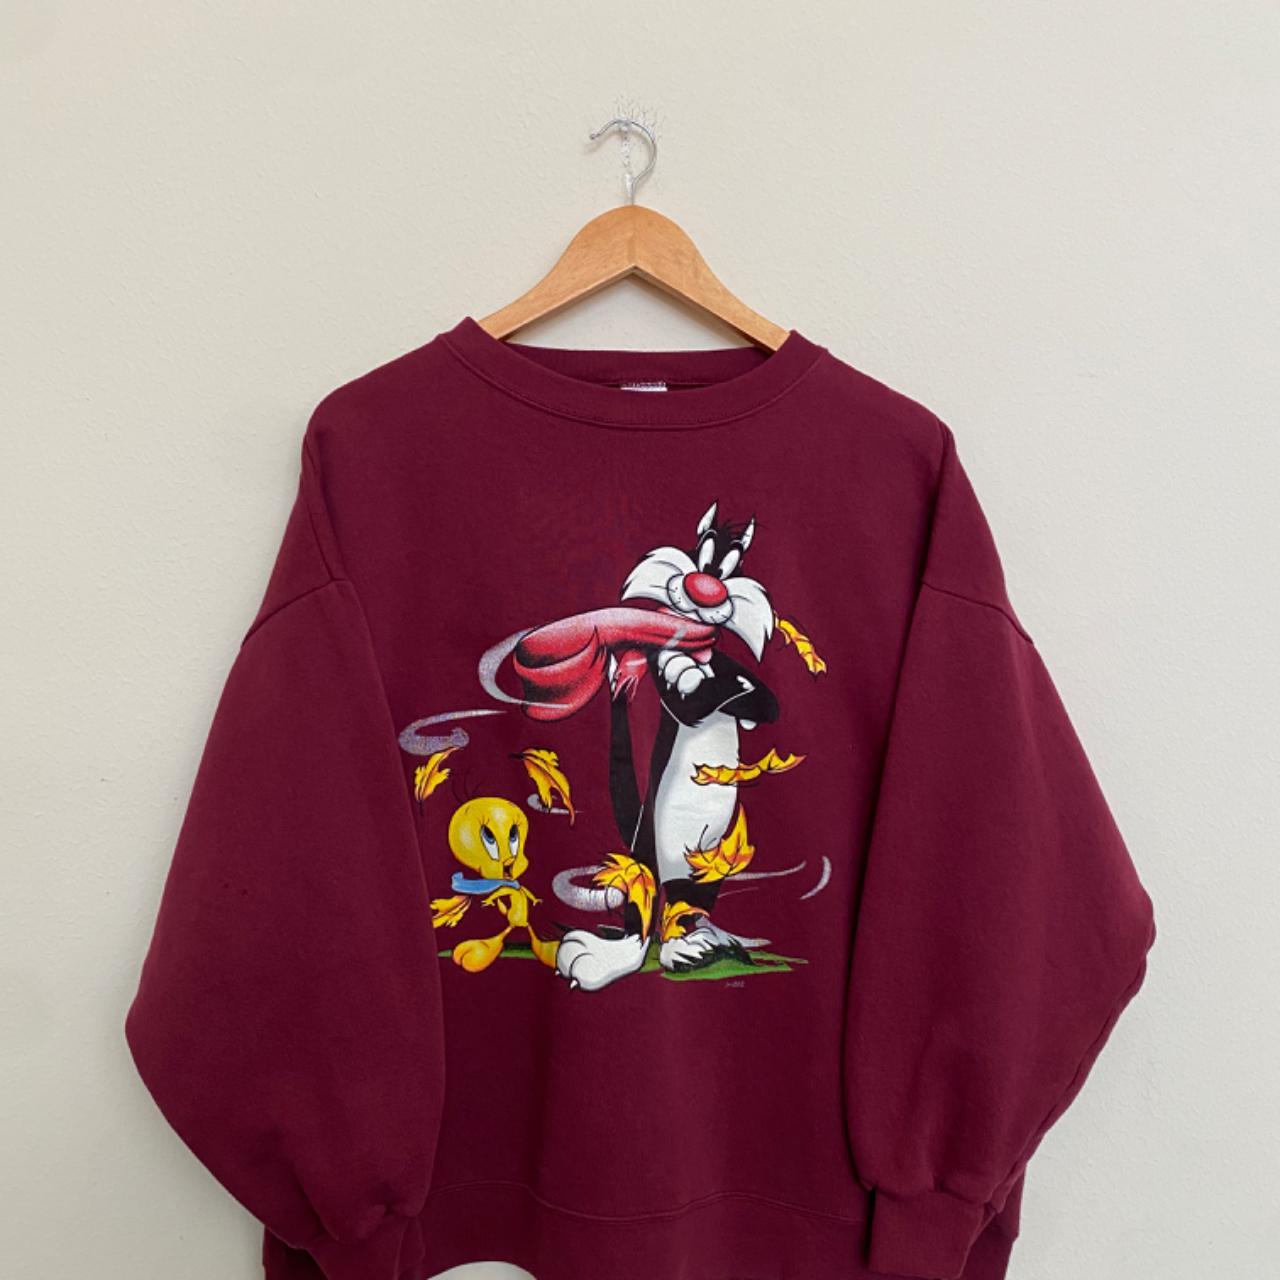 Vintage 90s Warner Bros Looney Tunes Sweatshirt... - Depop